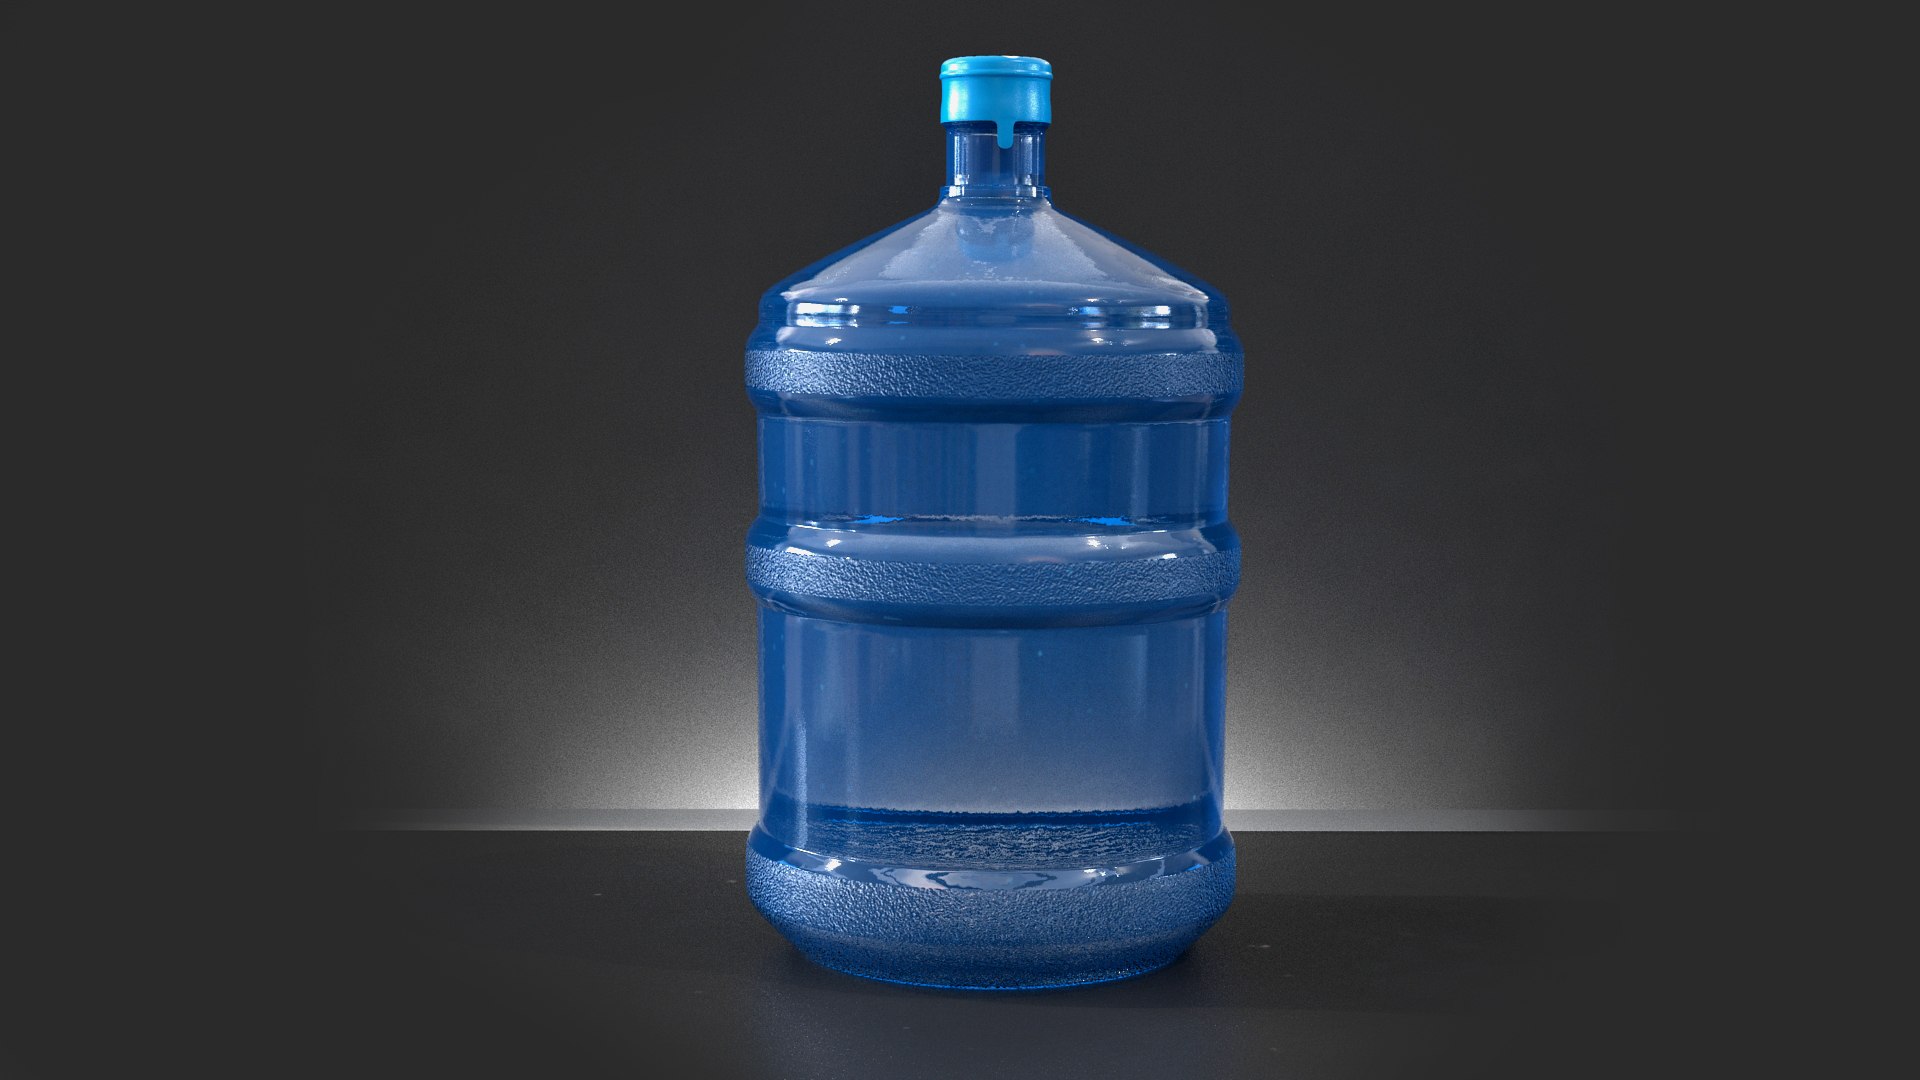 Coleman Autoseal Water Bottles Collection 3D model - TurboSquid 1819847